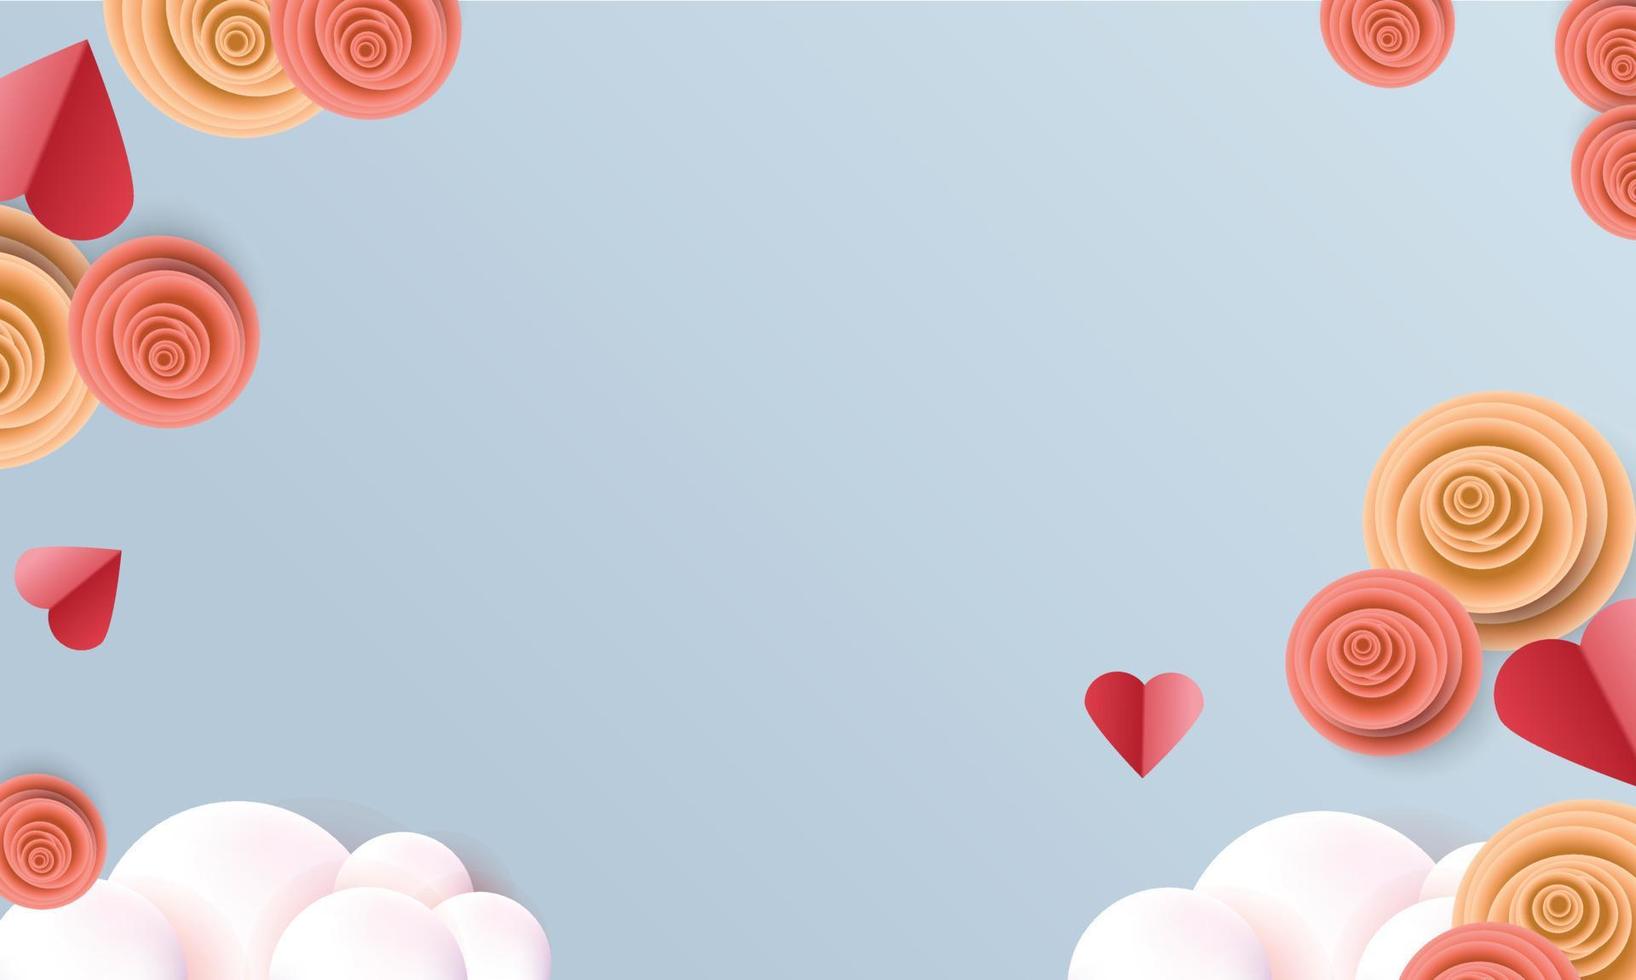 fundos dos namorados coração céu vermelho moldura rosa conceito de design de banner vetor de cartão de cartaz